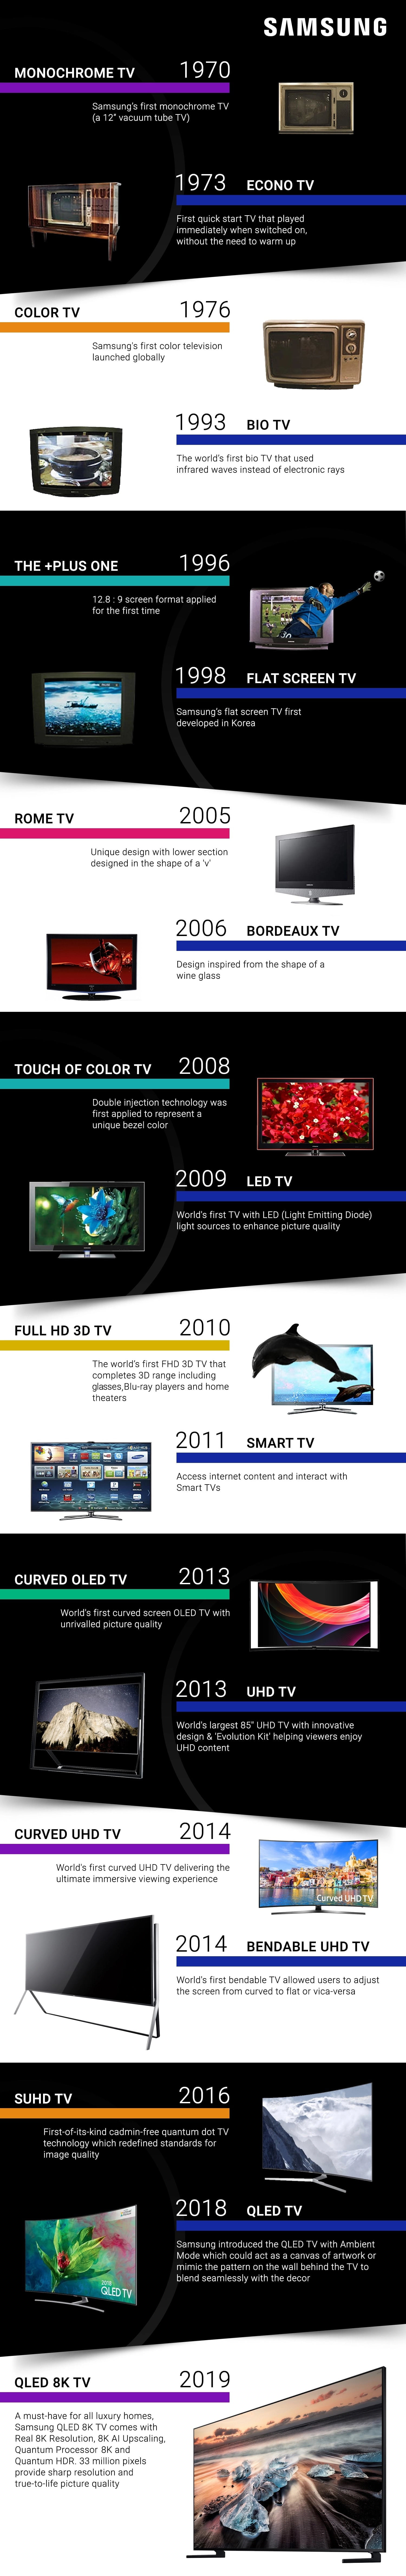 samsung infografika innowacje telewizory kamienie milowe